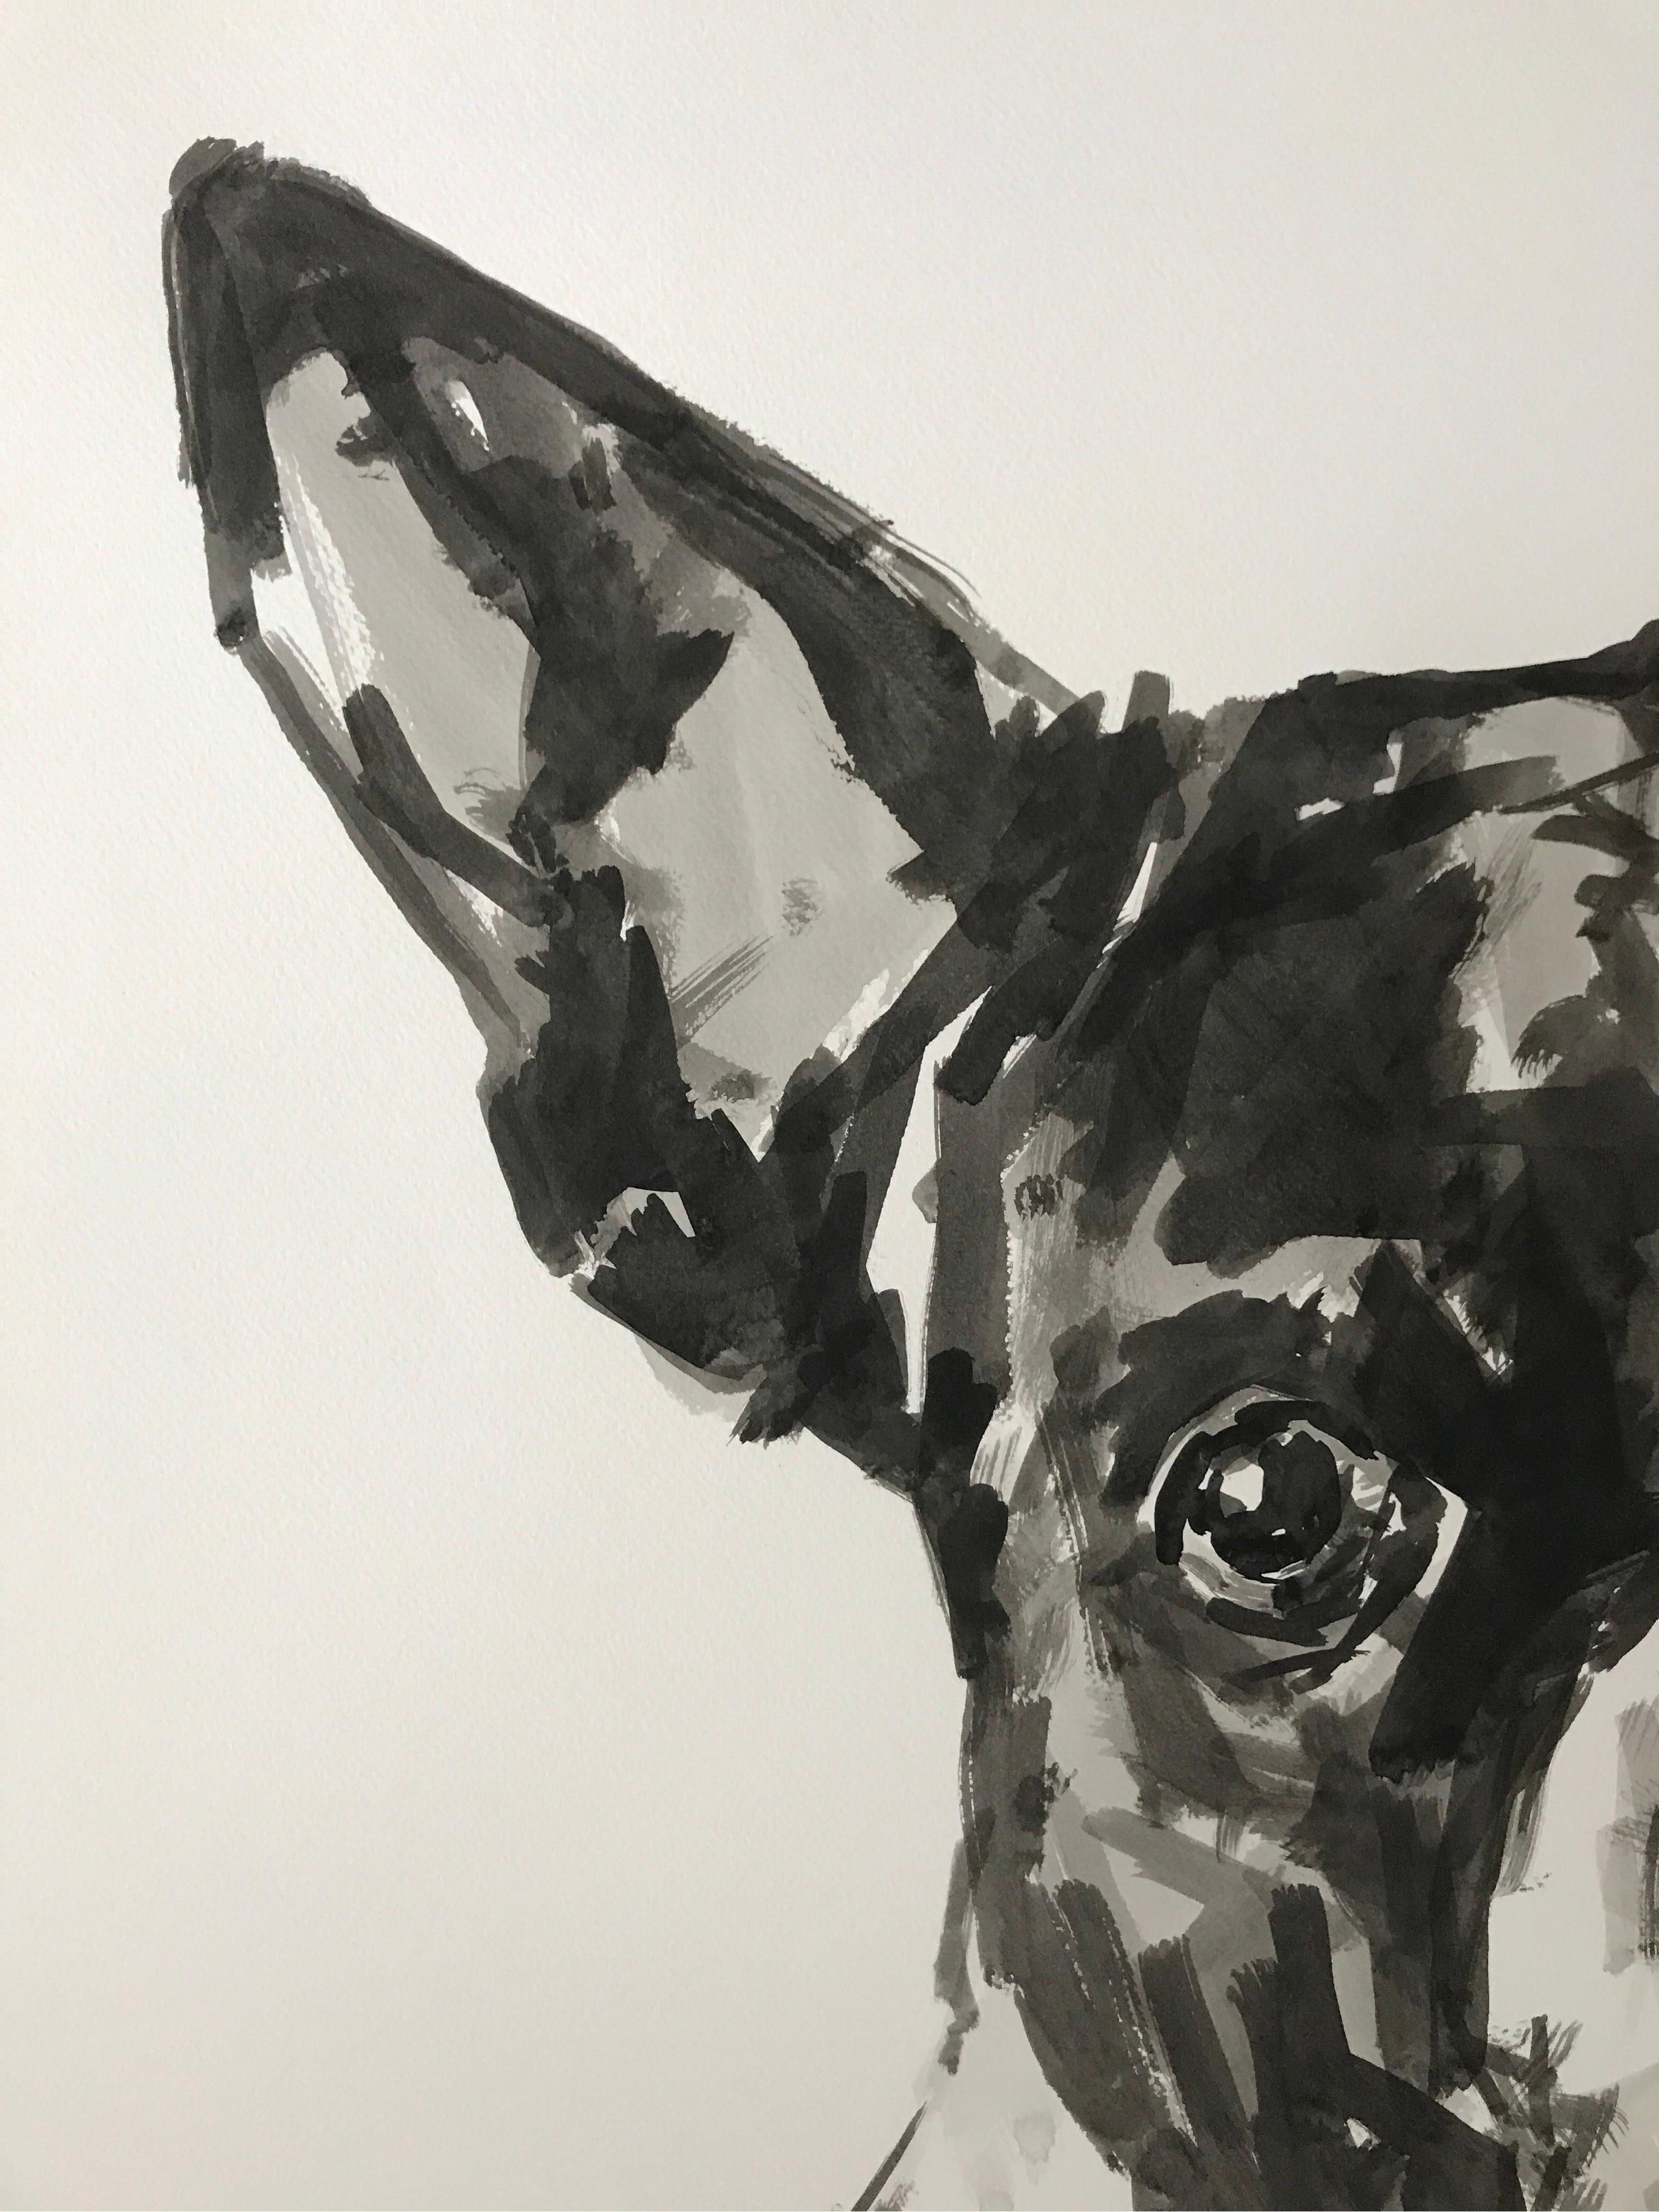 Boston Terrier,  Dieses atemberaubende große schwarz-weiße Tuschegemälde eines Boston Terriers ist ein zeitgenössisches, minimalistisches Porträt in schwarzer Tinte auf Fabriano 300gsm Papier. Ian Masons Hundeporträts sind sehr eindrucksvoll, da er